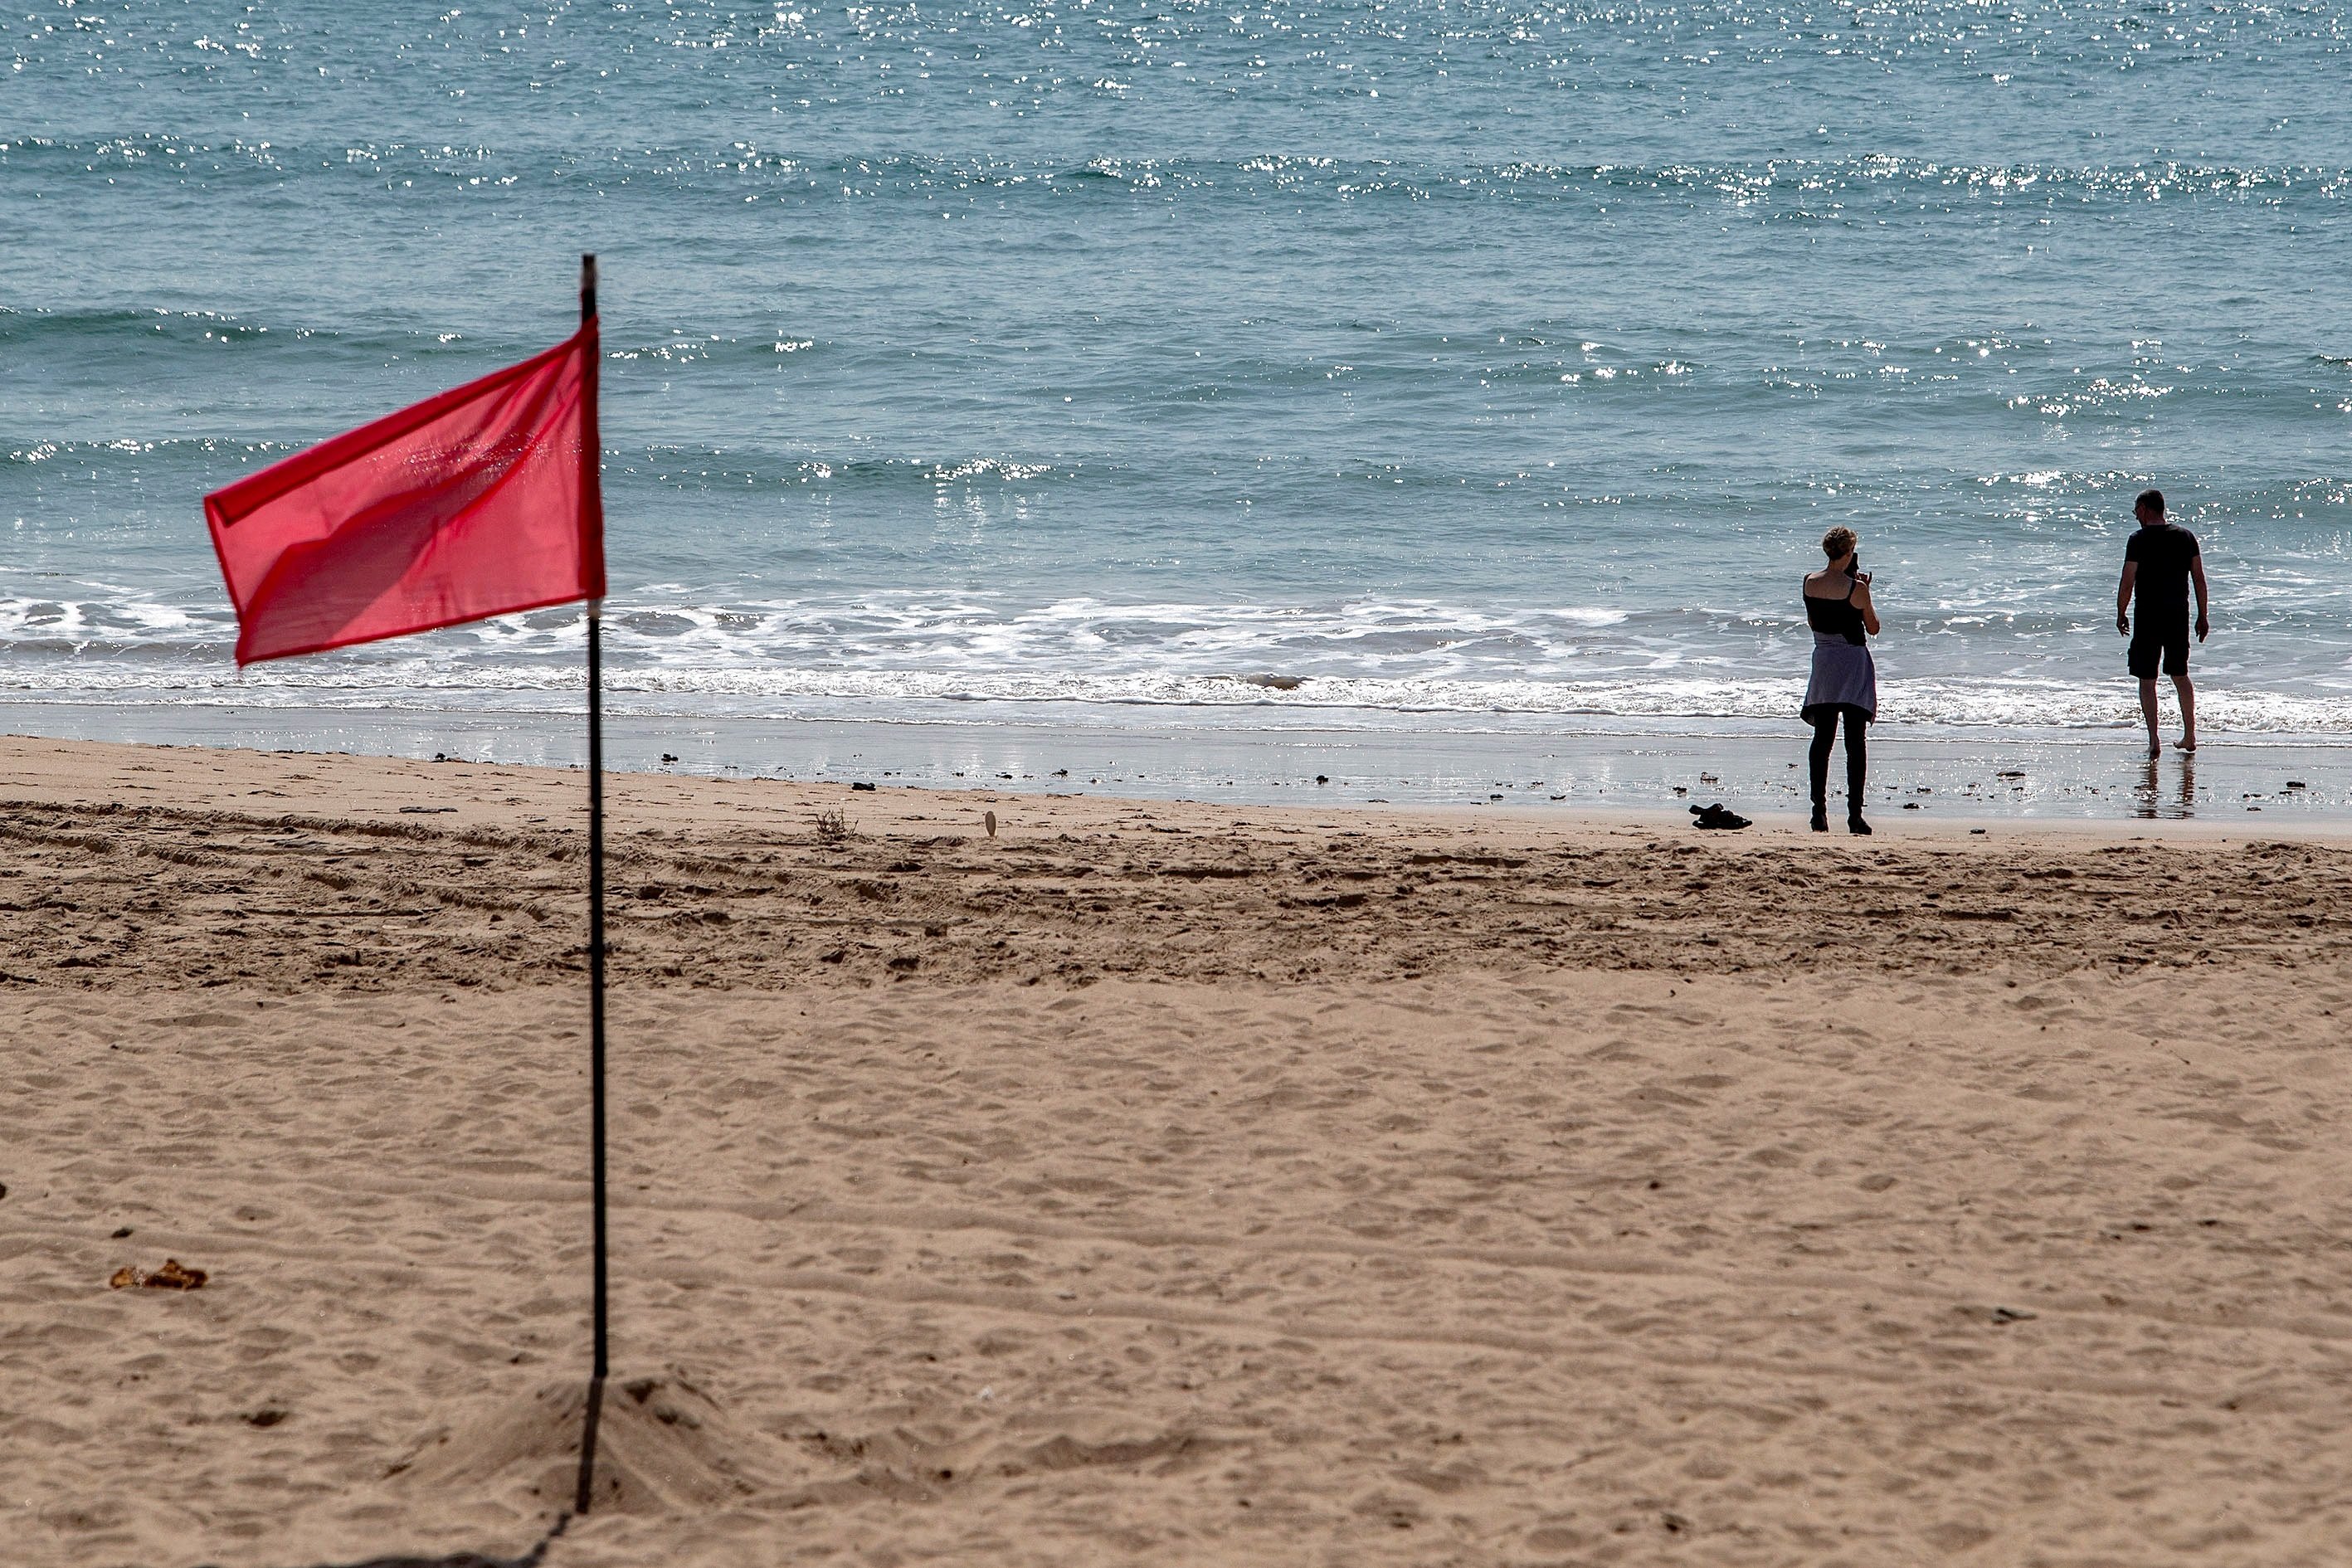 Barcelona permetrà prendre el sol a la platja si es manté la seguretat